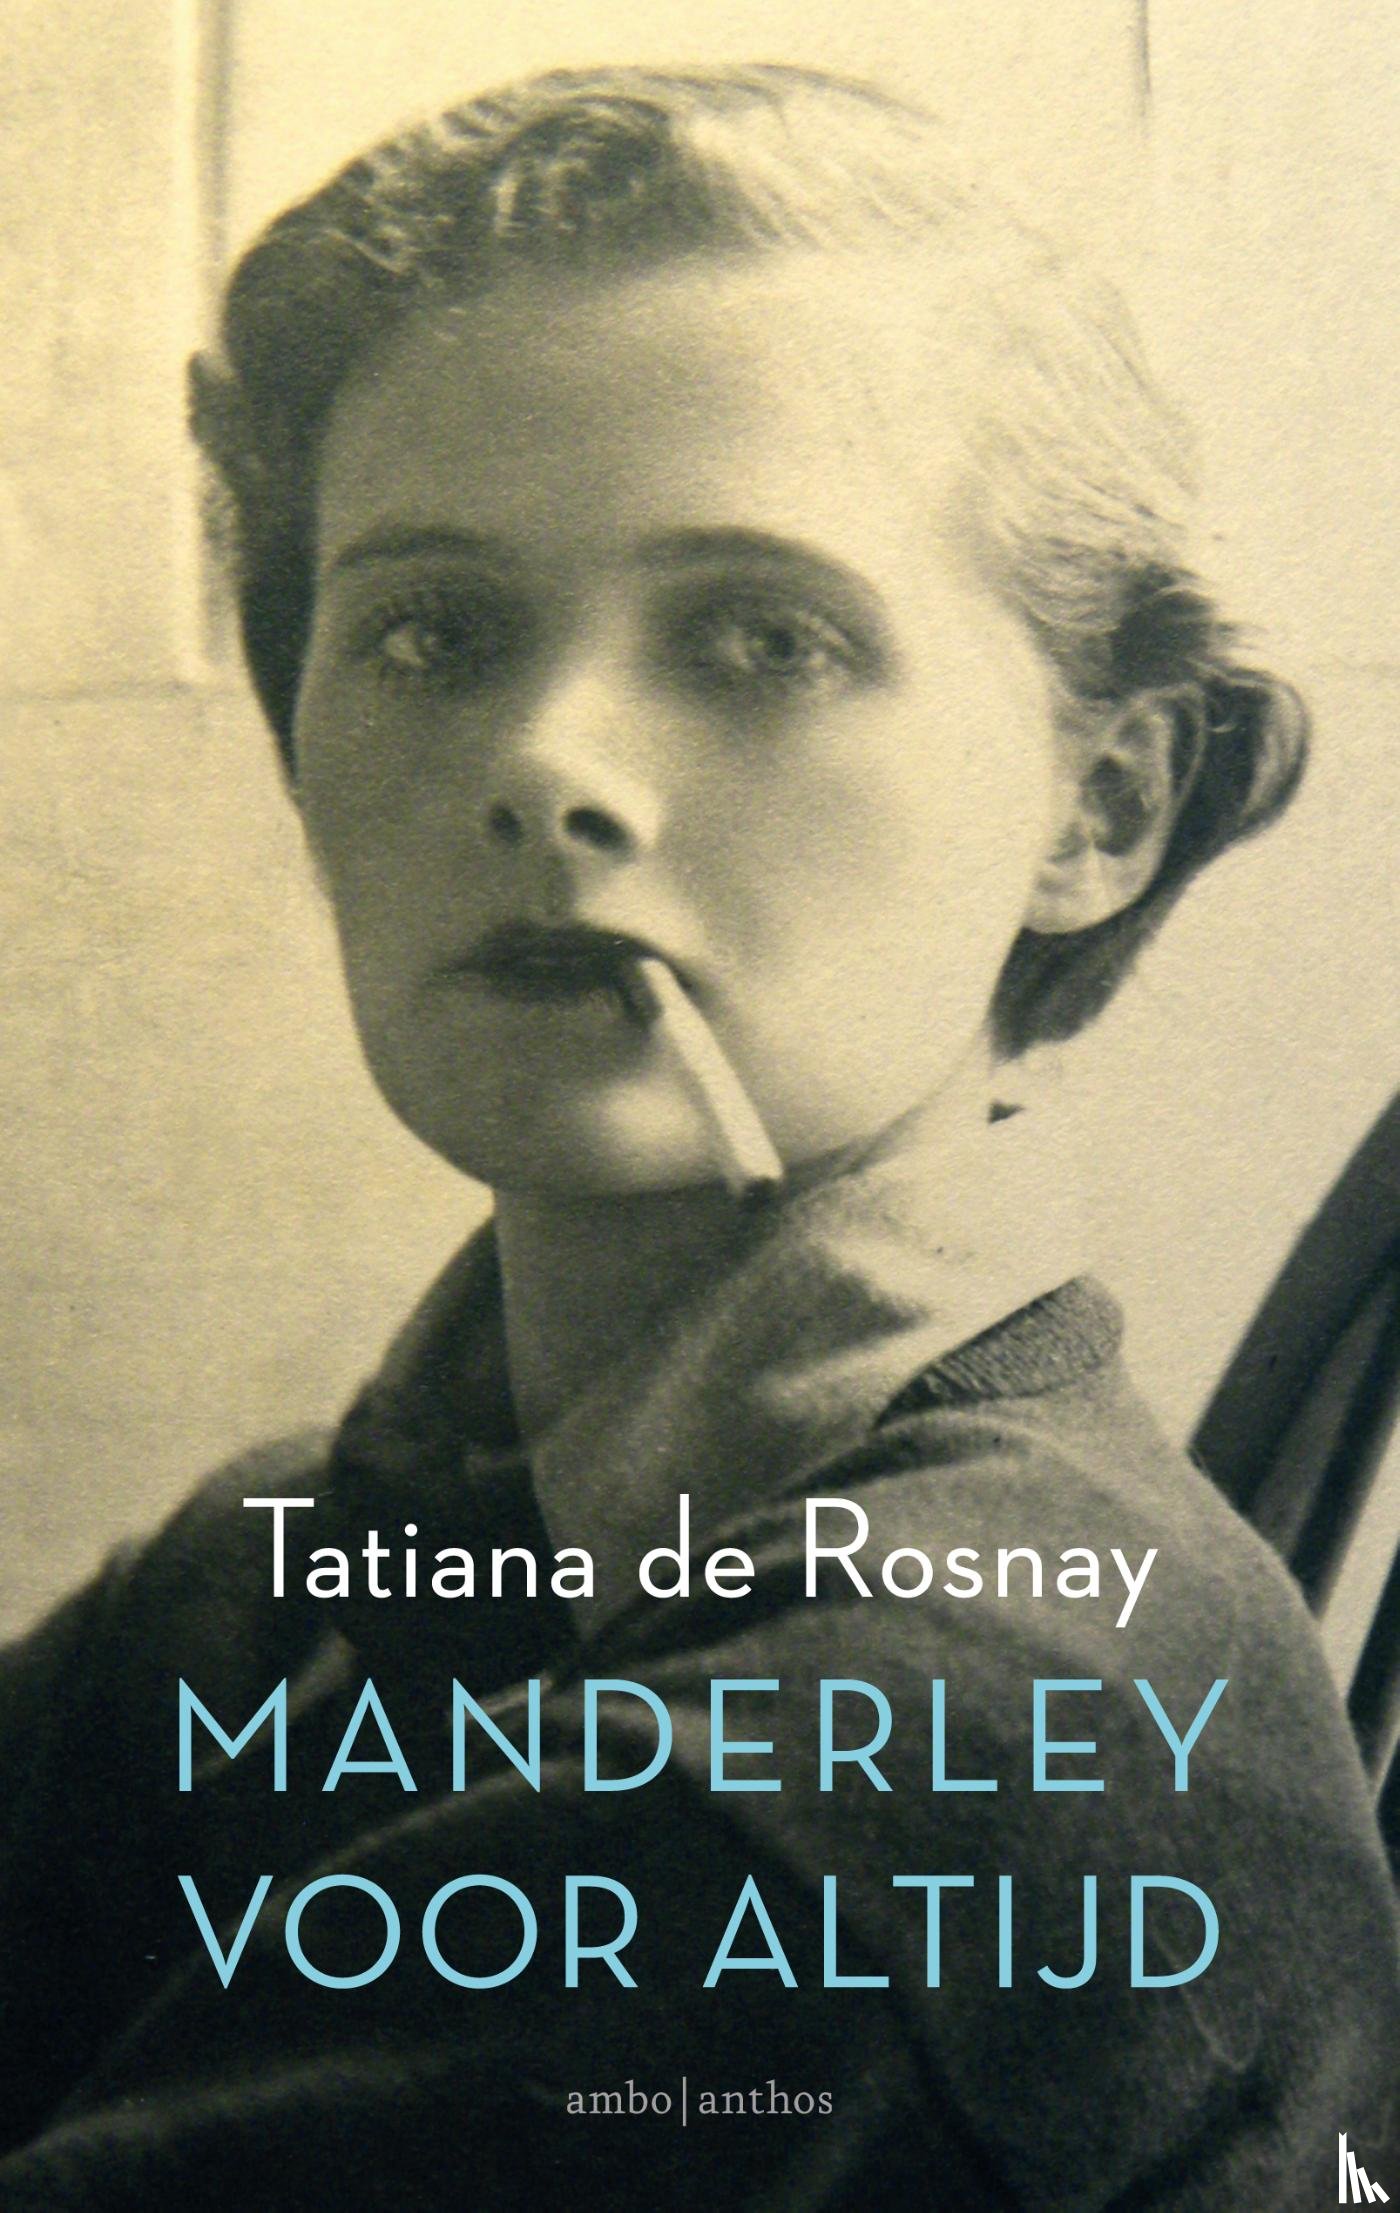 Rosnay, Tatiana de - Manderley voor altijd